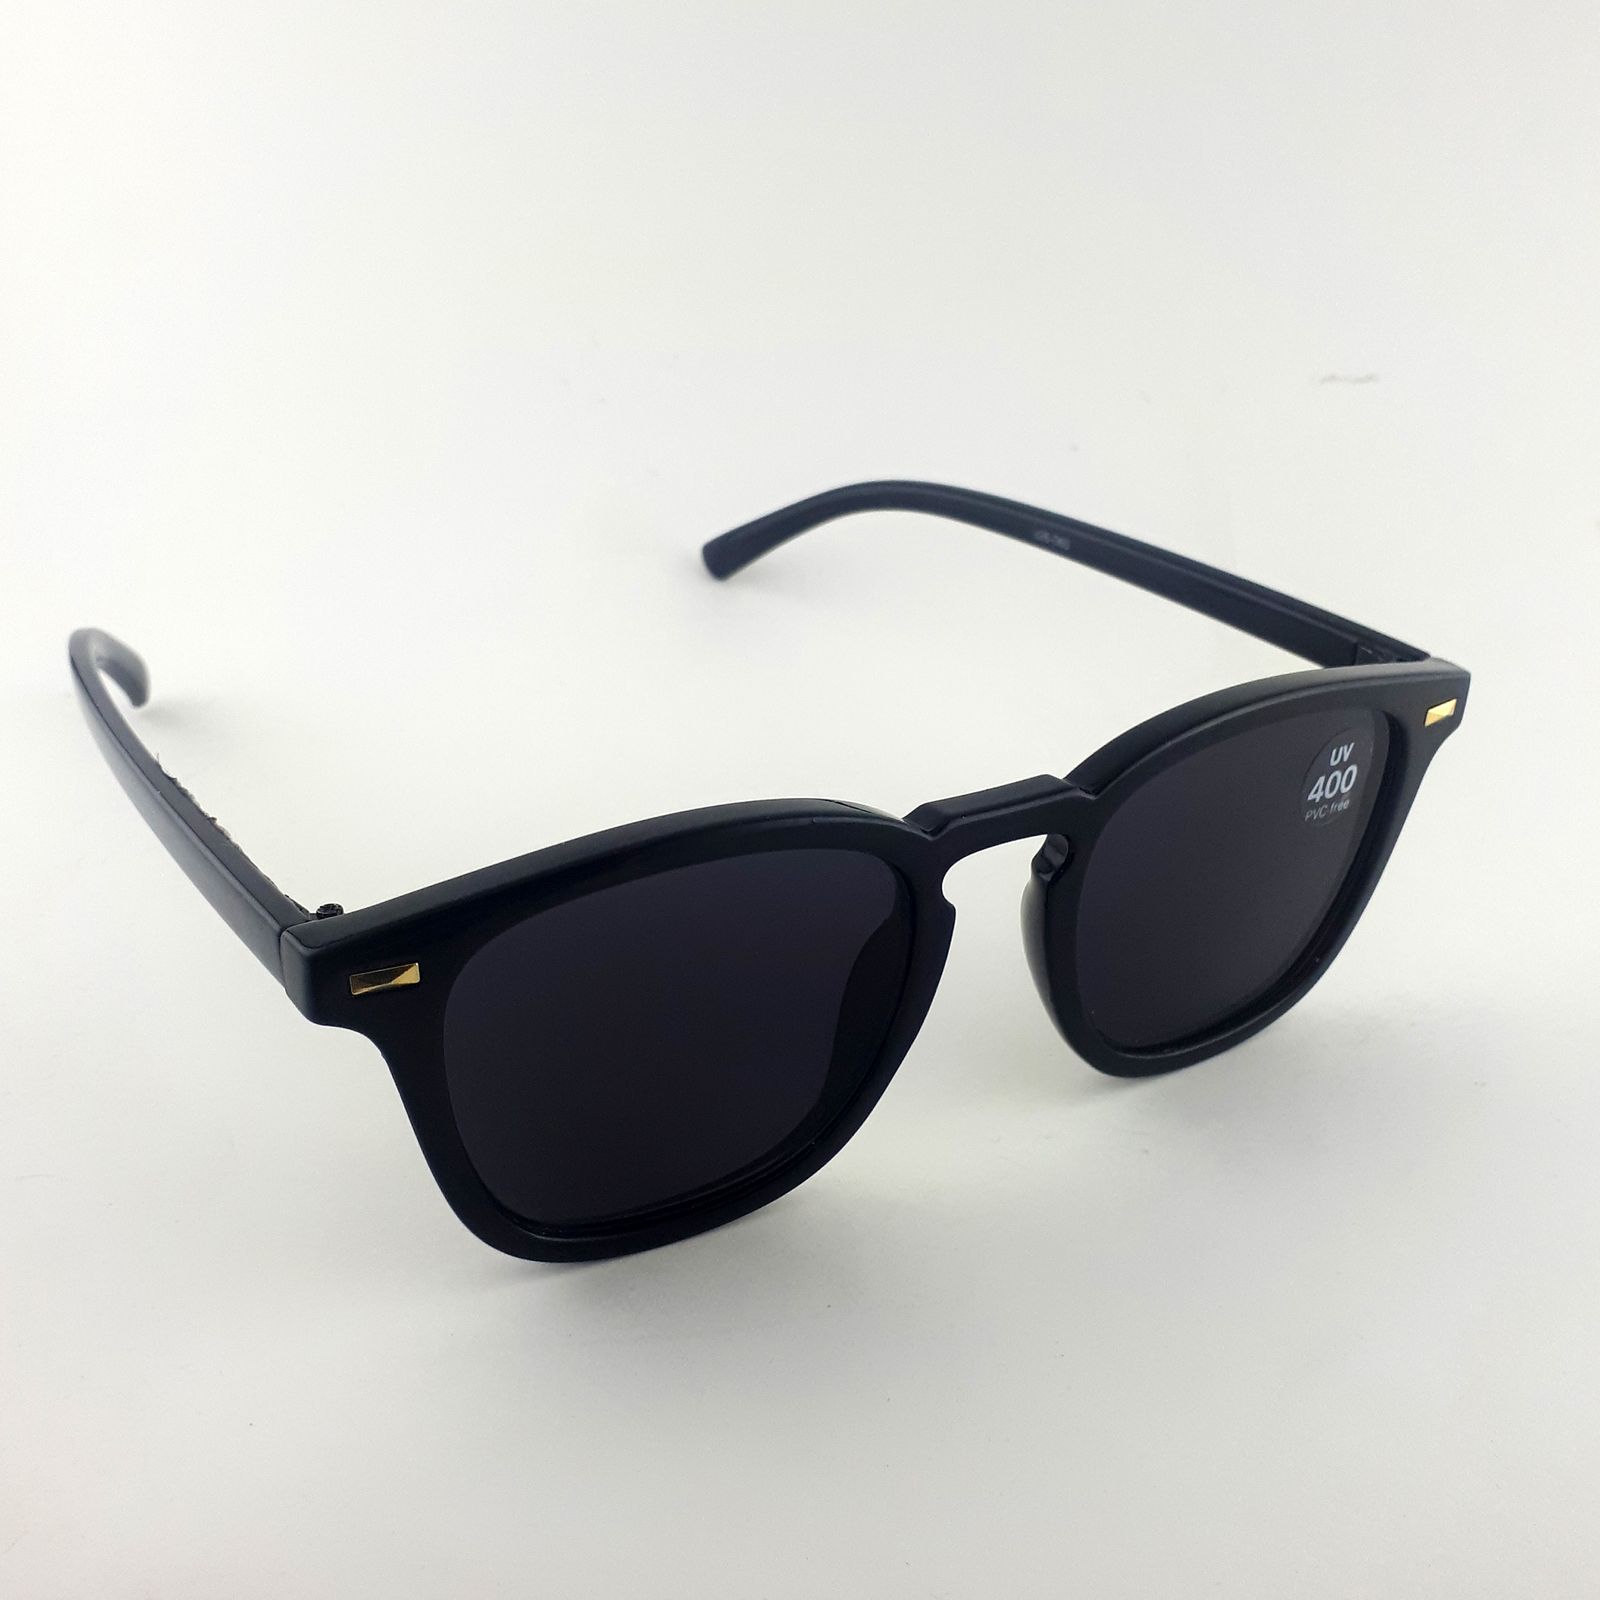 عینک آفتابی زنانه مدل sx-326-060-uv-vifrer -  - 2